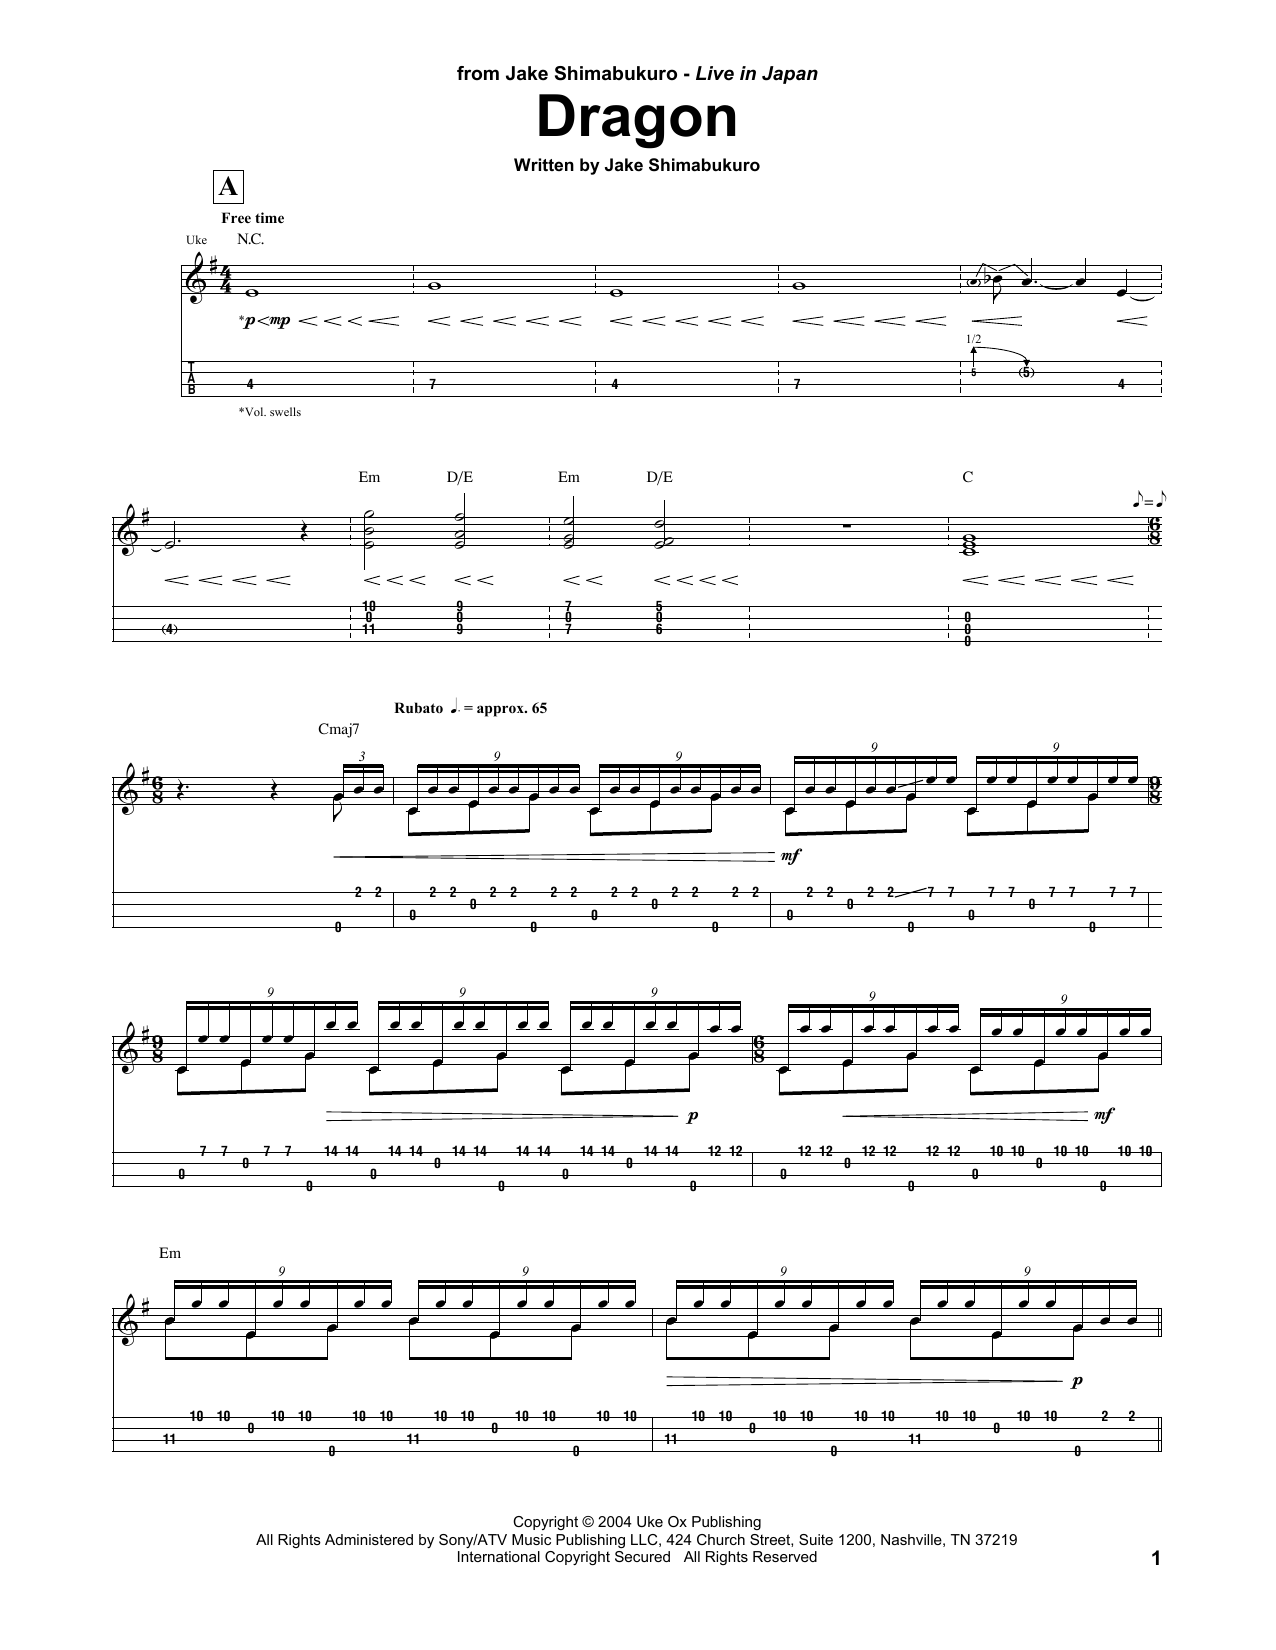 Download Jake Shimabukuro Dragon Sheet Music and learn how to play UKETAB PDF digital score in minutes